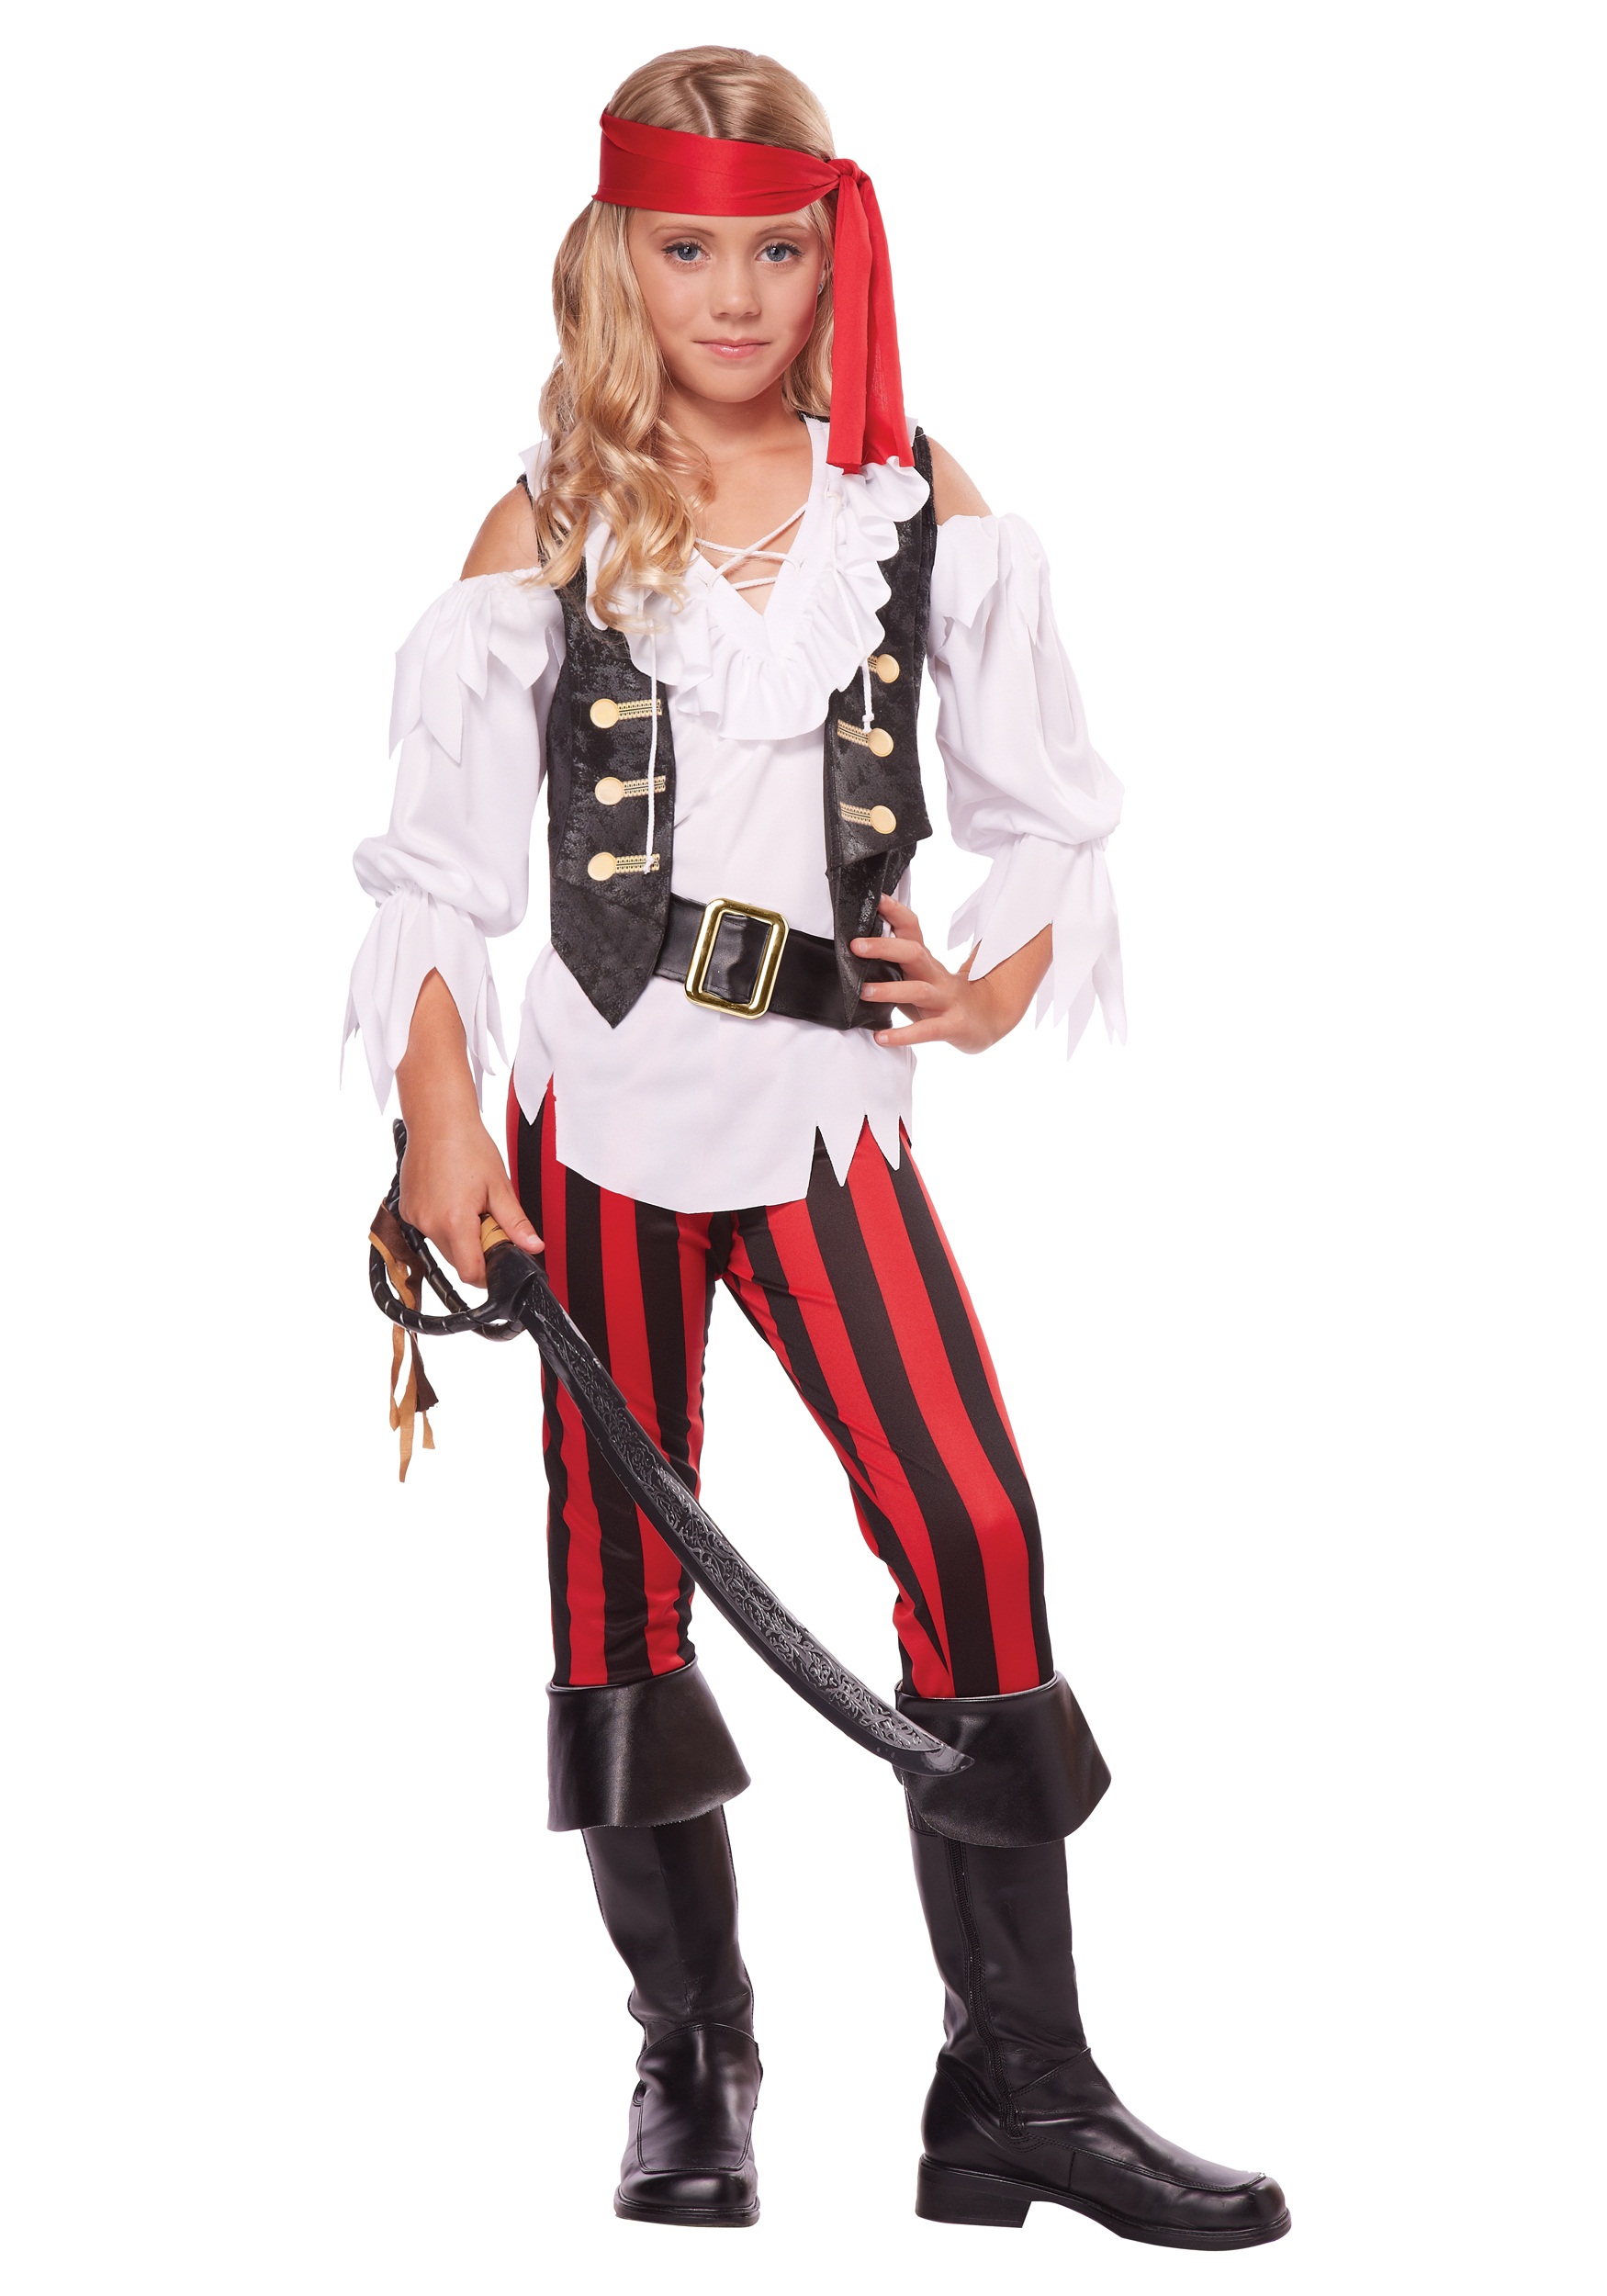 Posh Pirate Costume for Girls